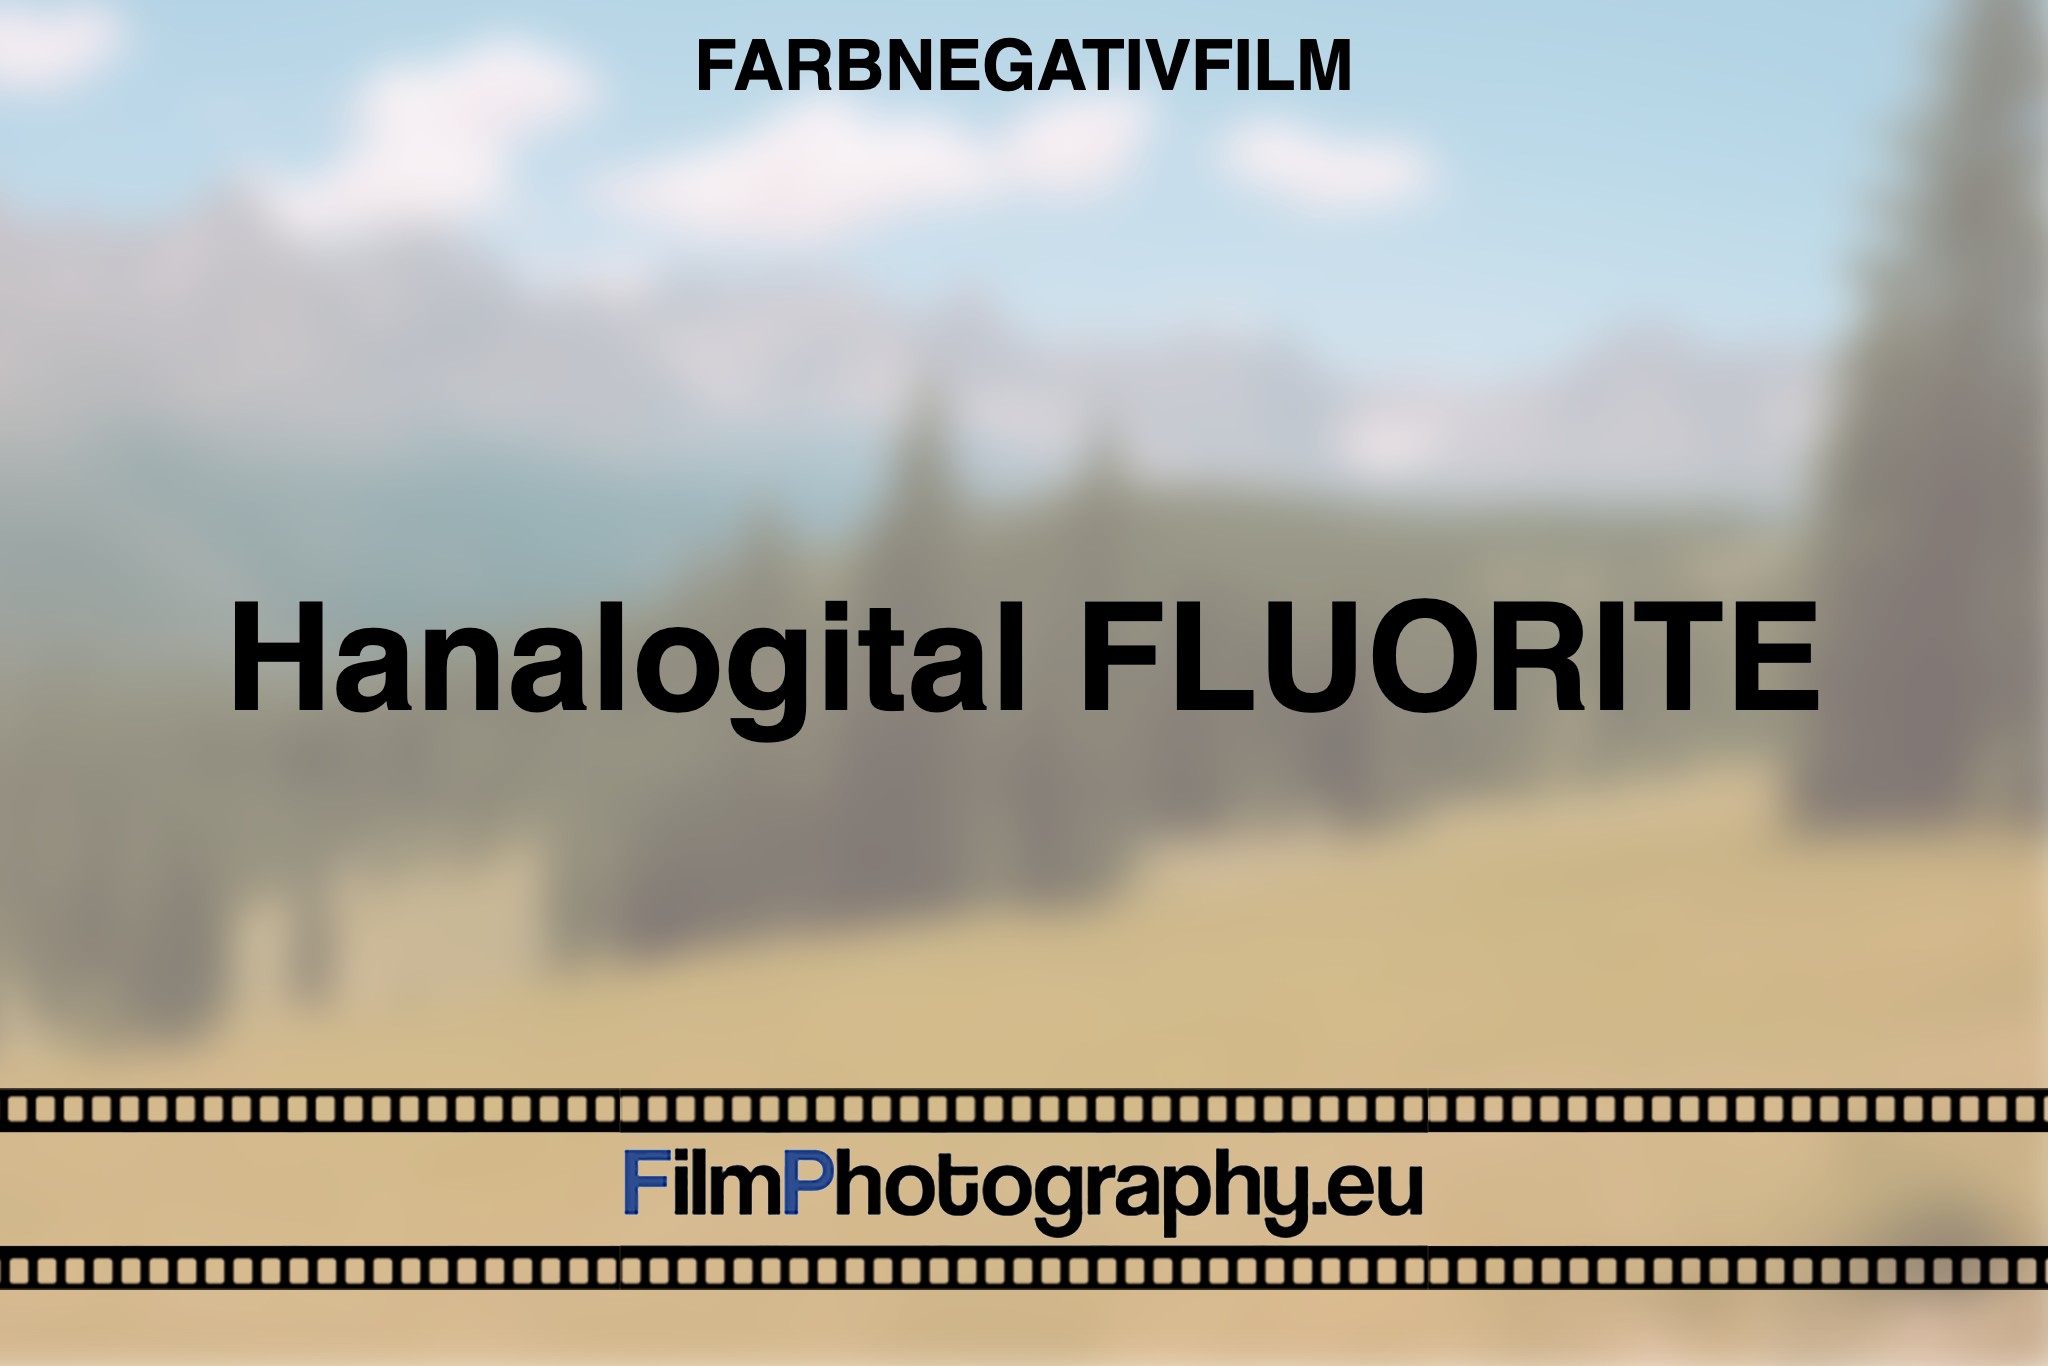 hanalogital-fluorite-farbnegativfilm-bnv